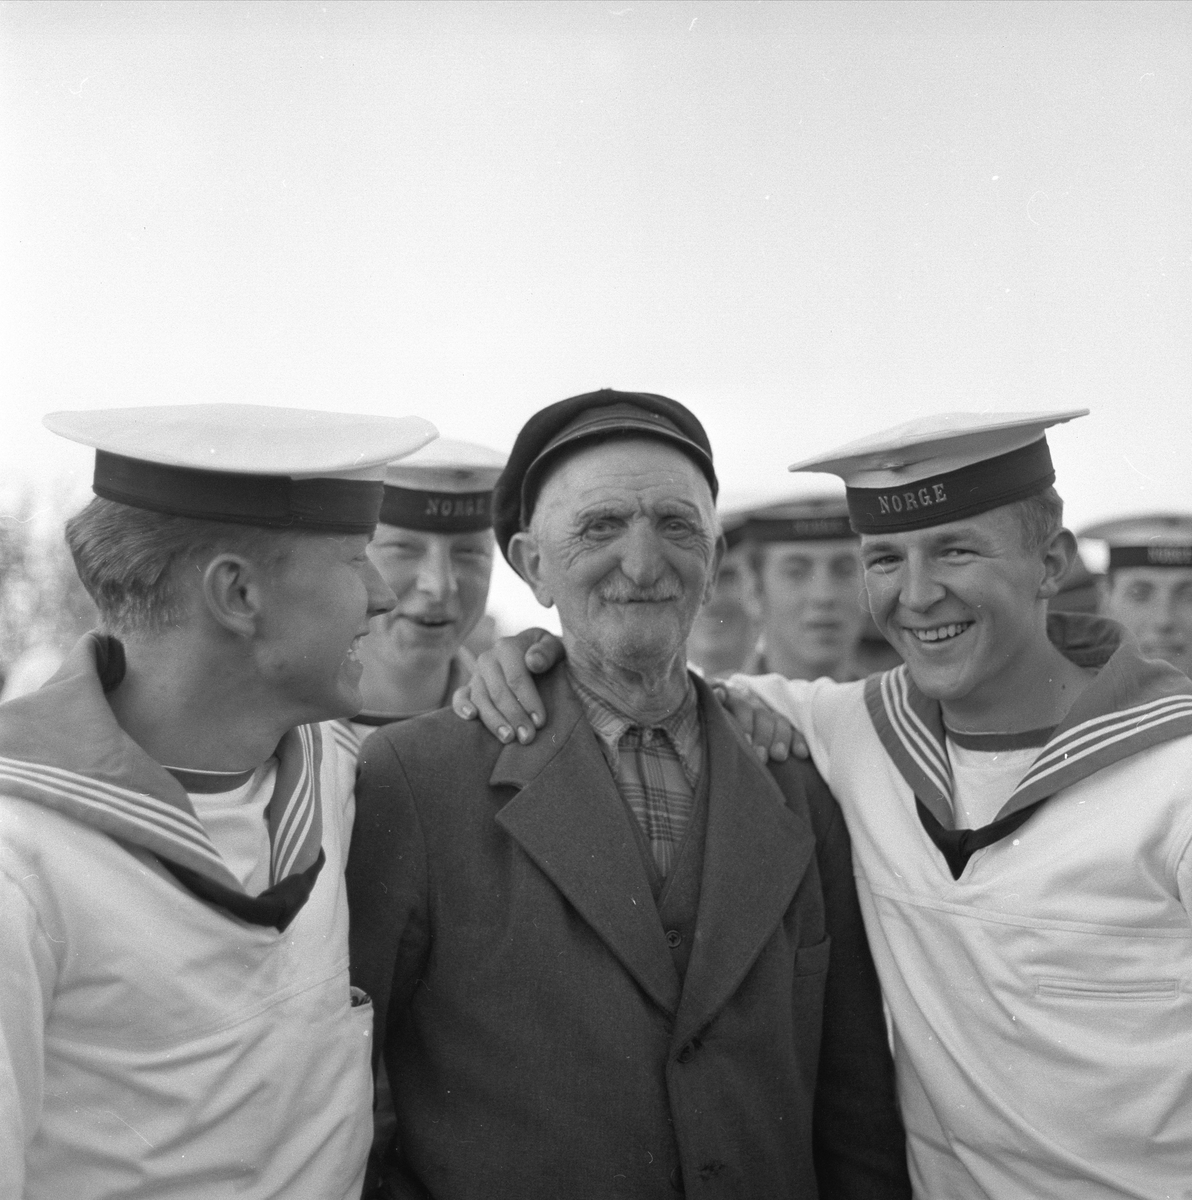 Kristiansund, Møre og Romsdal, 23.06.1958. St. Hans feiring. Portrett av gaster og gammel mann.